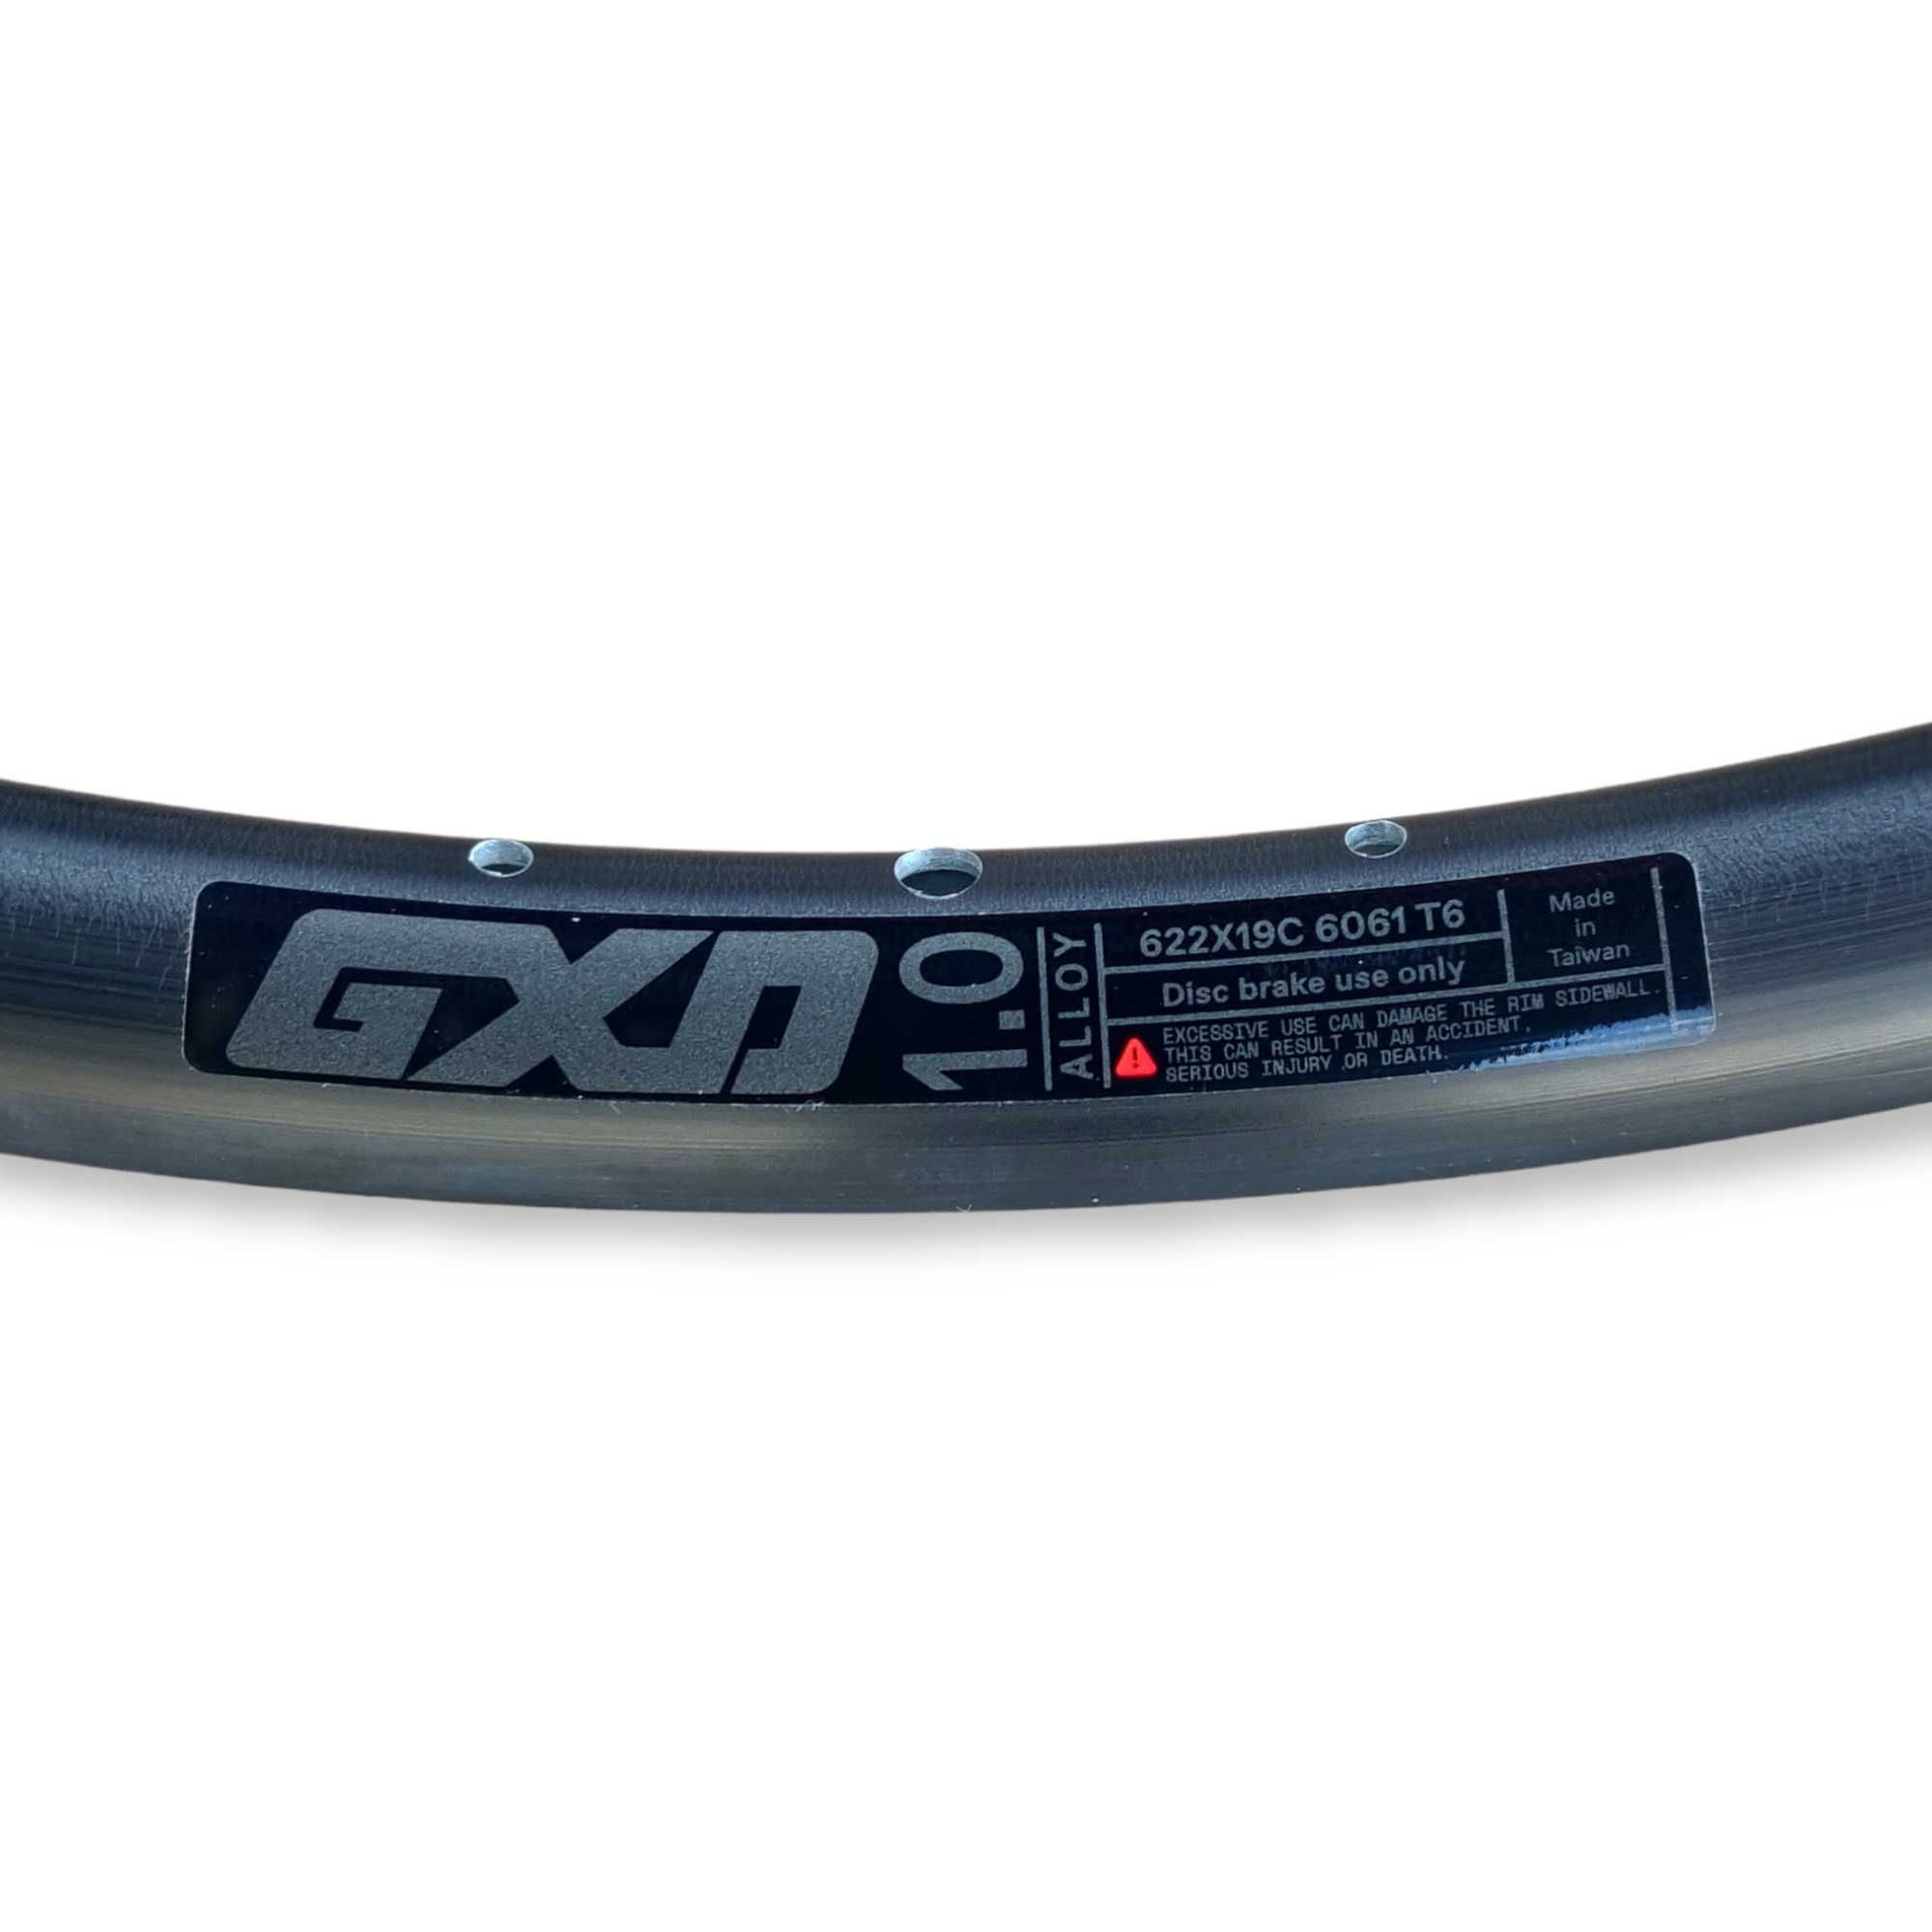 Obręcz rowerowa GXD 1.0, 29'' 622x19c,  disc FV23%, nowa /021-009